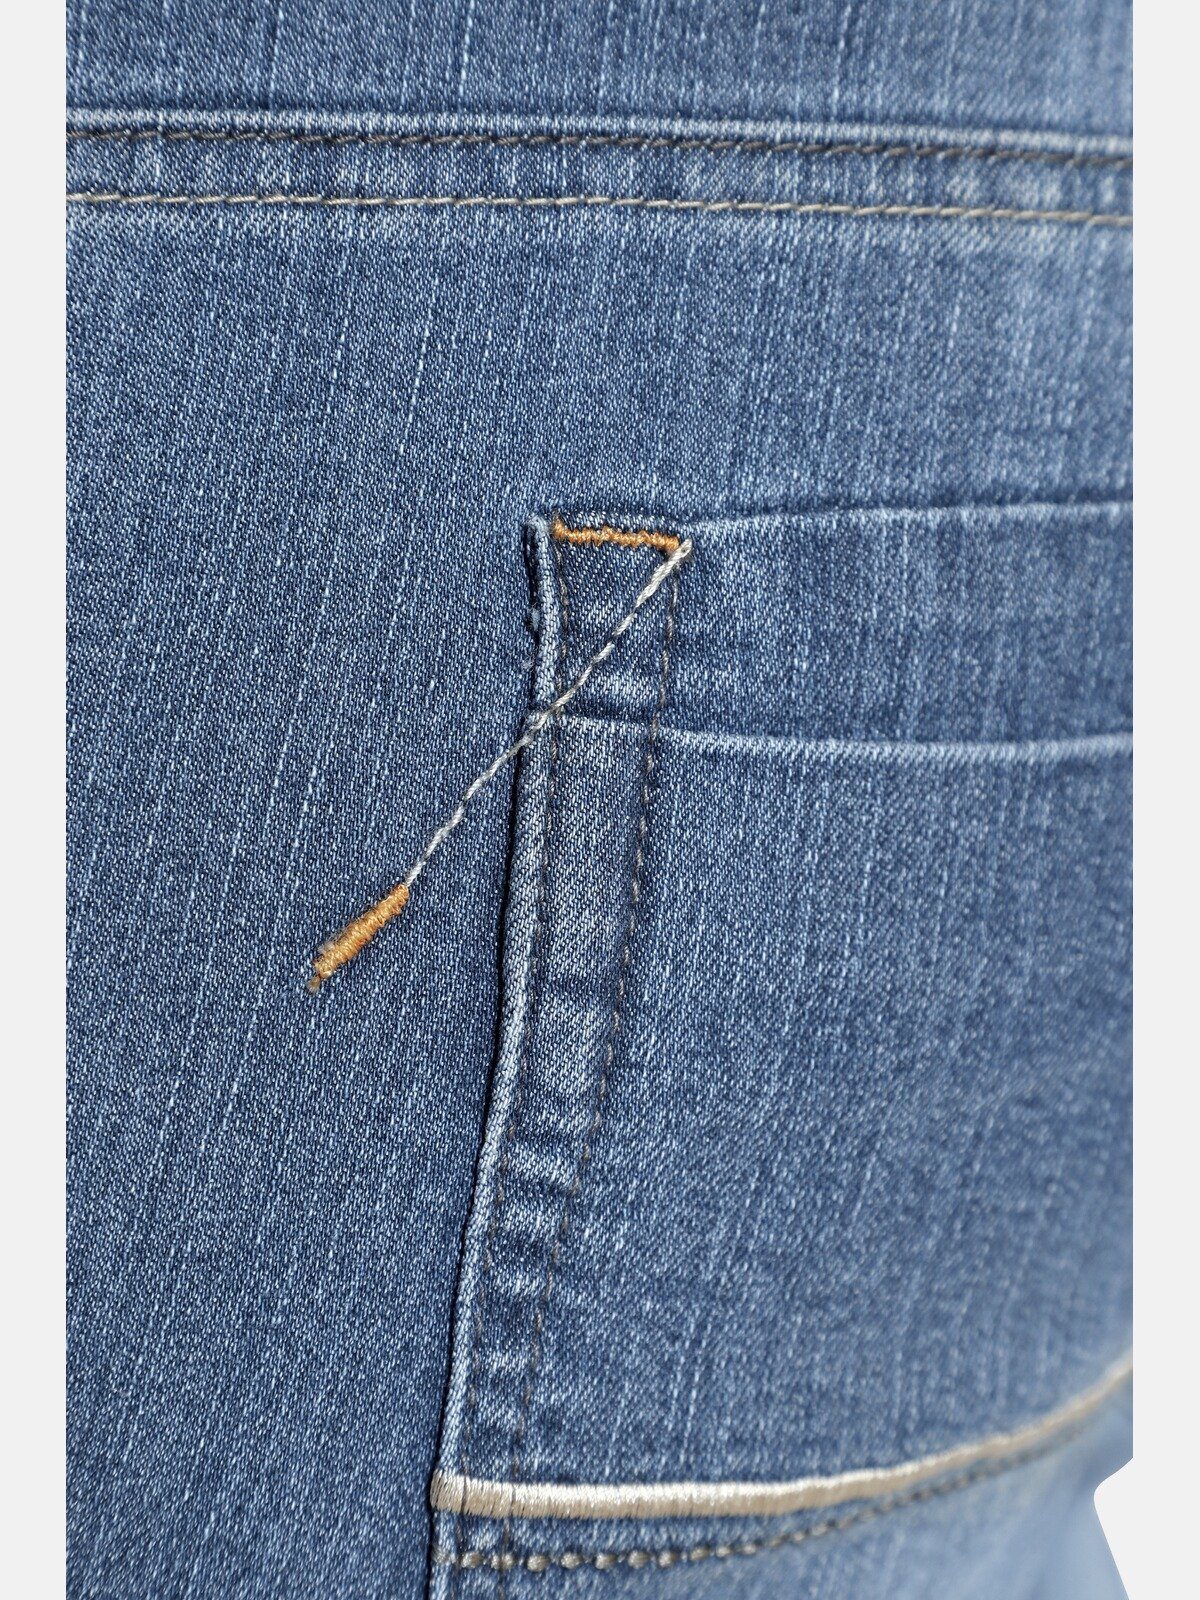 Colby BARON Five-Pocket-Design 5-Pocket-Jeans Charles CASSANDER, dunkelblau